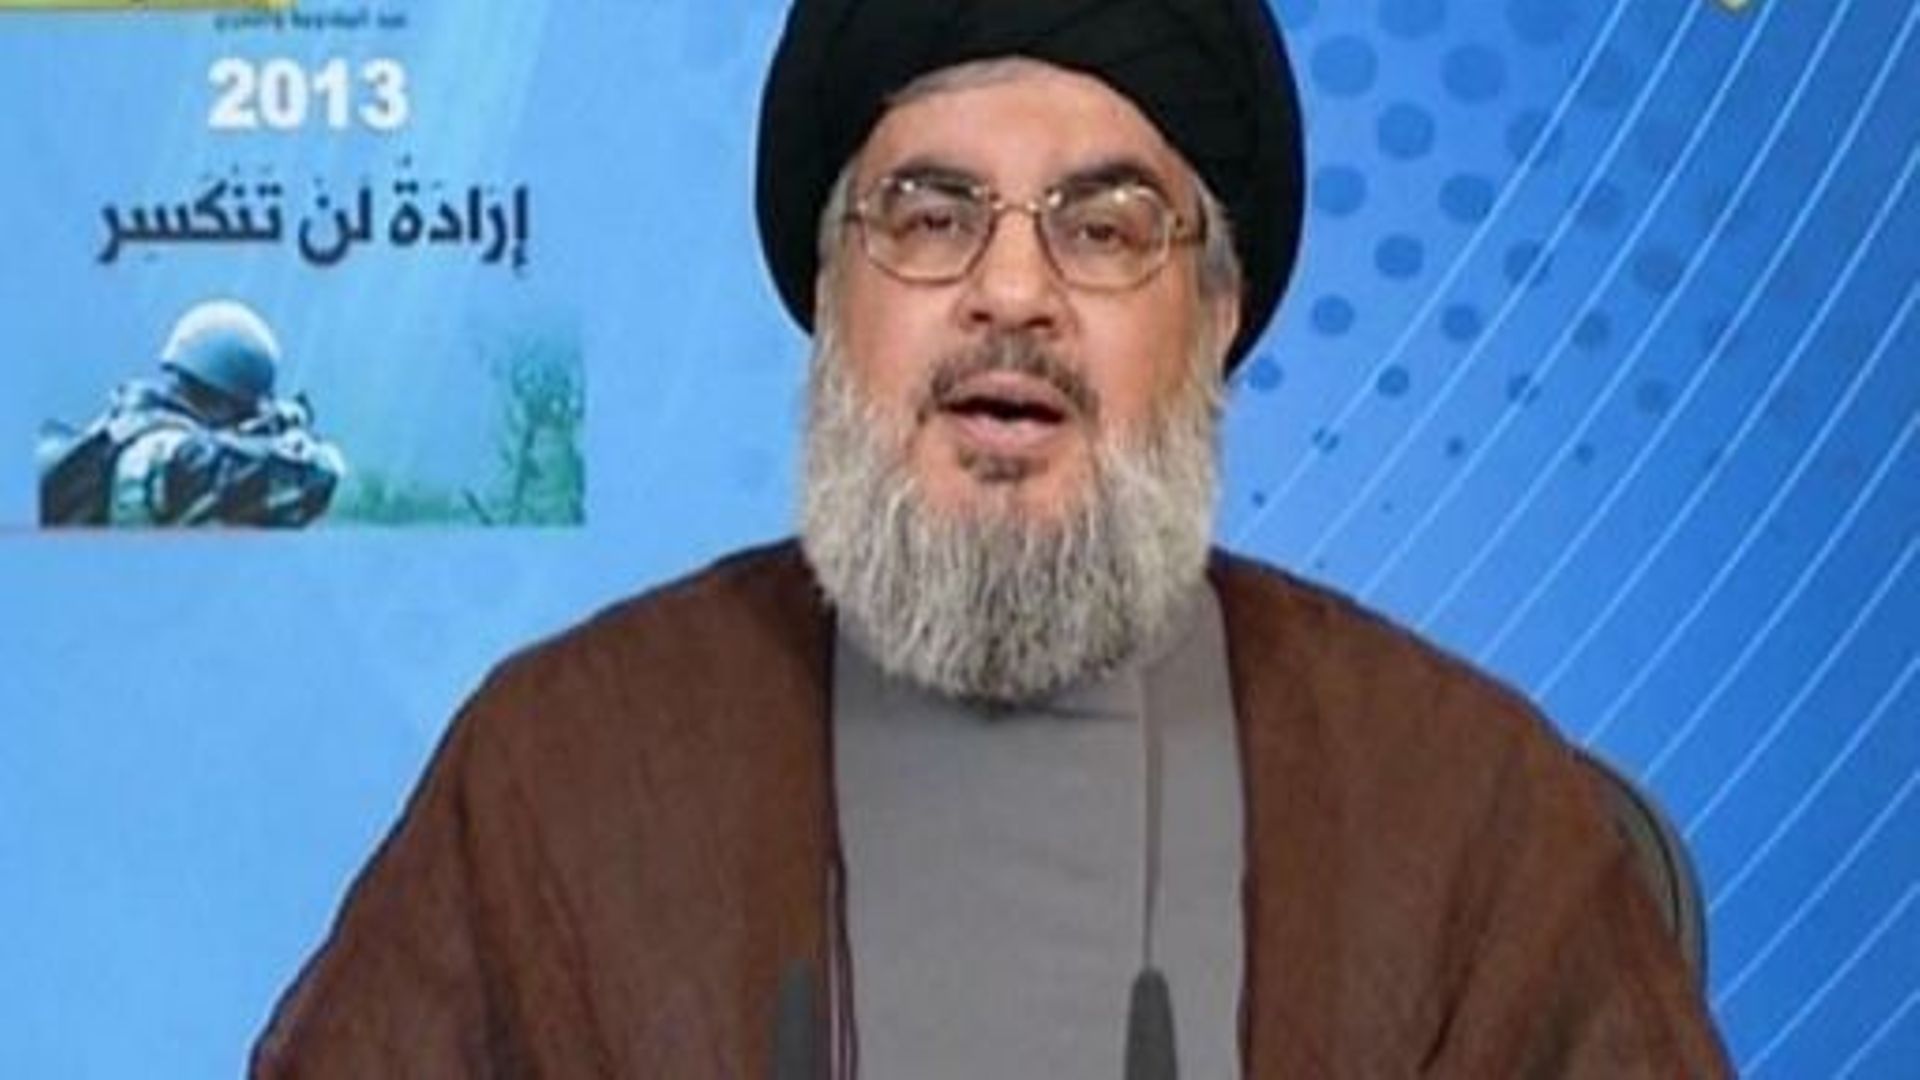 Capture d'écran de la TV al-Manar montrant Hassan Nasrallah, pendant son discours le 25 mai 2013